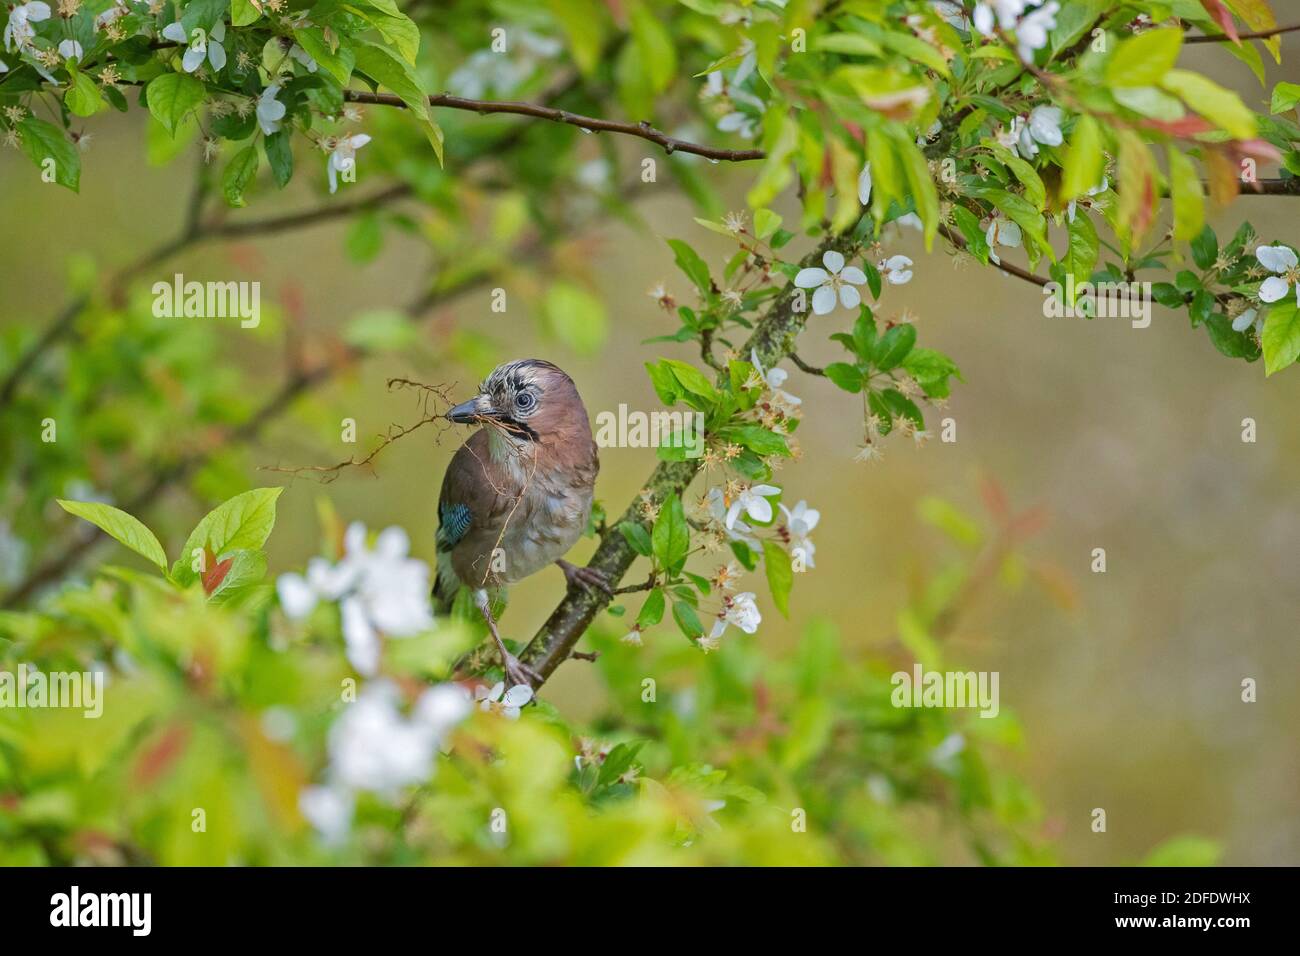 jay eurasien / jay européen (Garrulus glandarius / Corvus glandarius) perchée dans un arbre avec du matériel de nidification dans le bec au printemps Banque D'Images